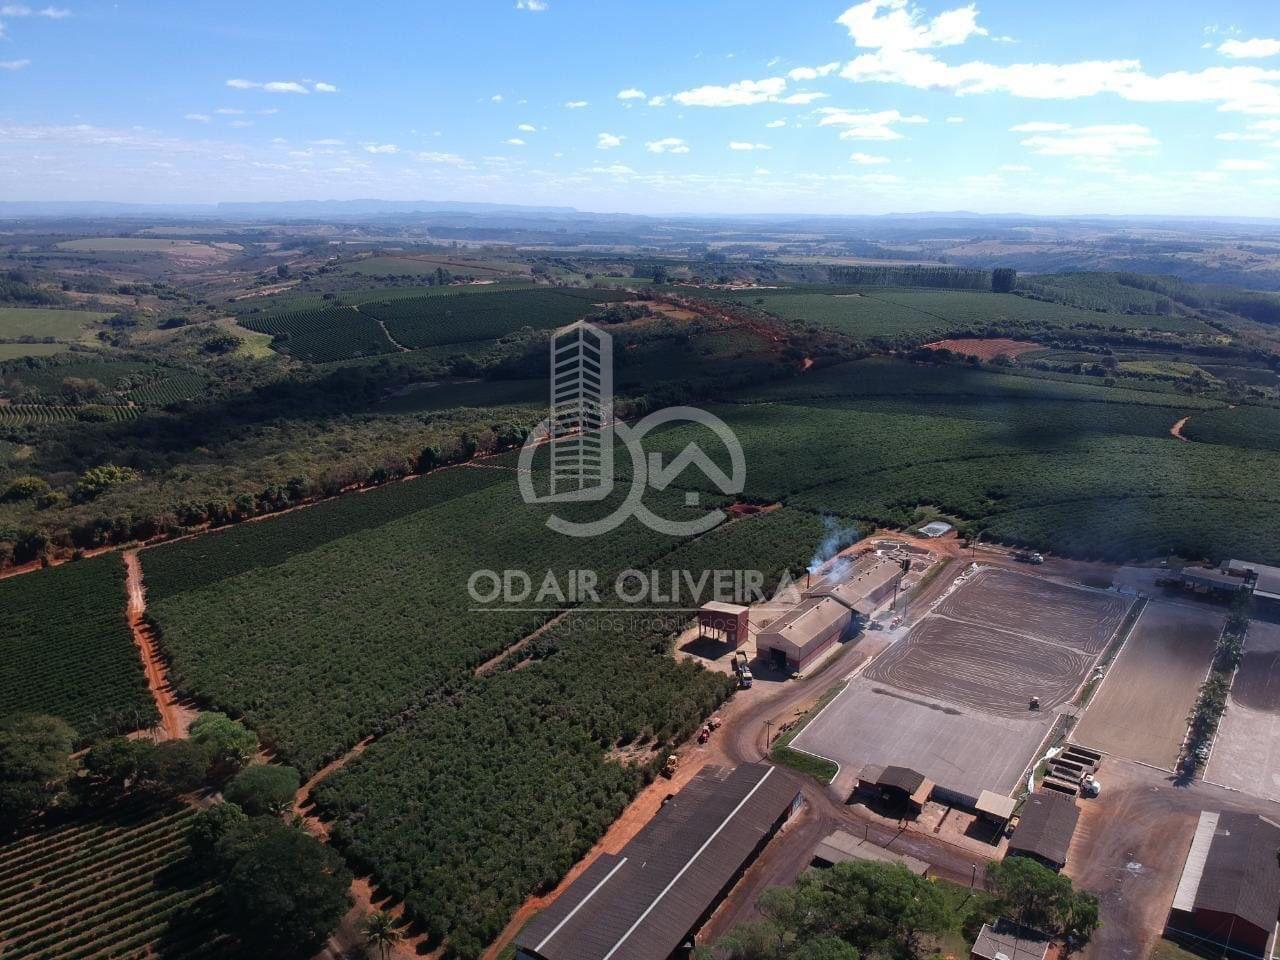 Fazenda no Sul de Minas Gerais,Regio de Passos - MG. rea total 1300ha